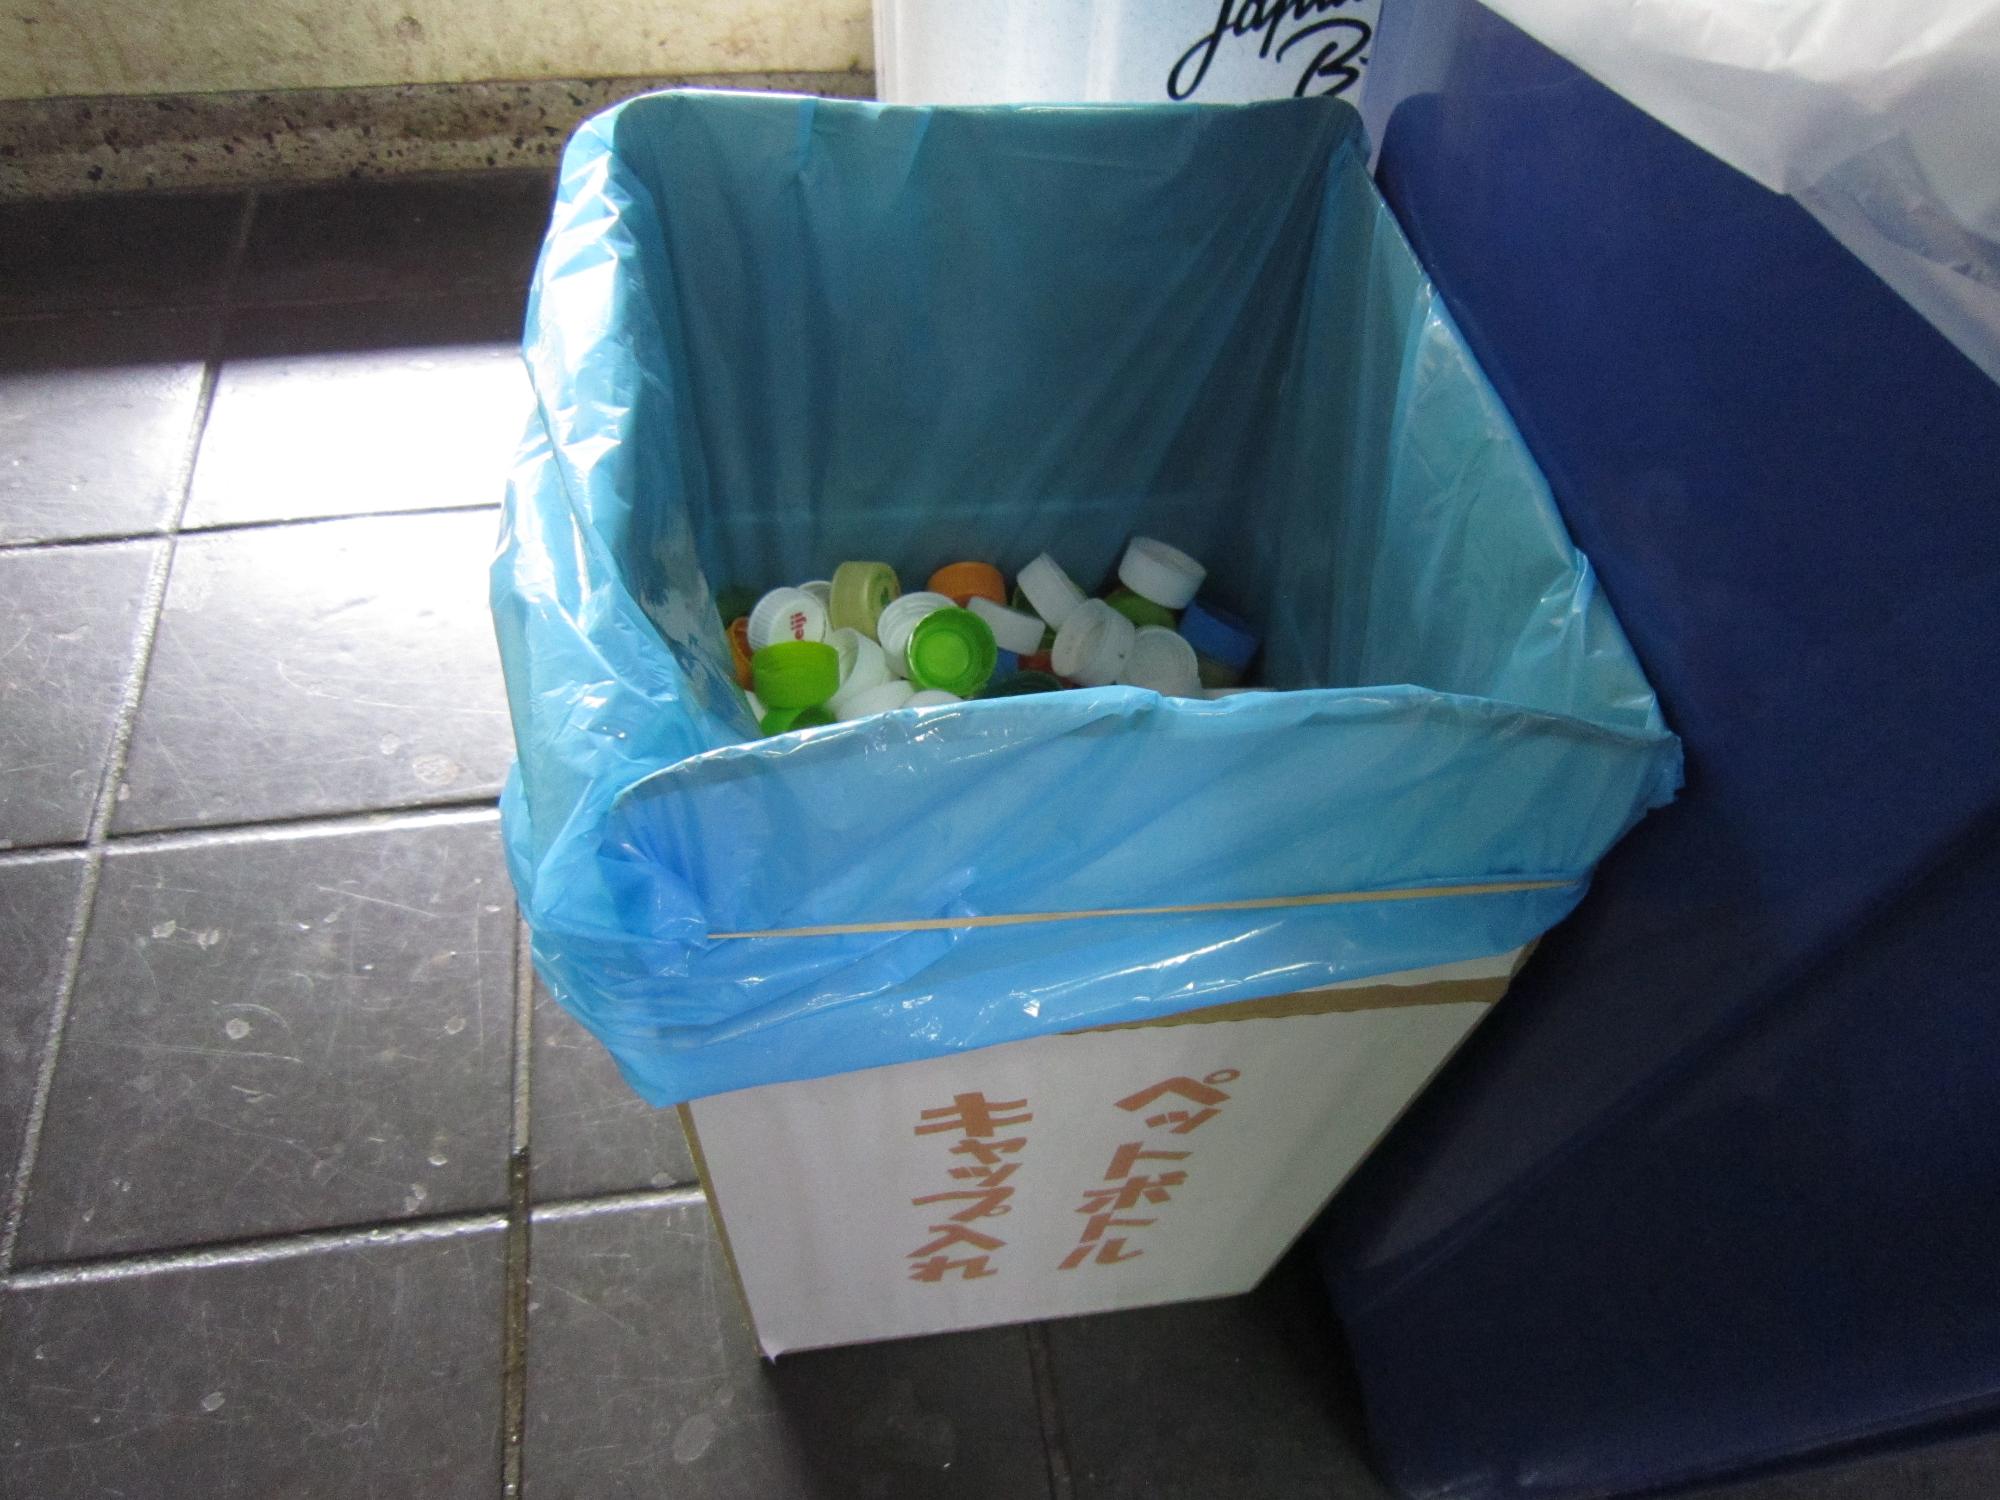 市役所1階に設置したペットボトルキャップ回収箱の写真